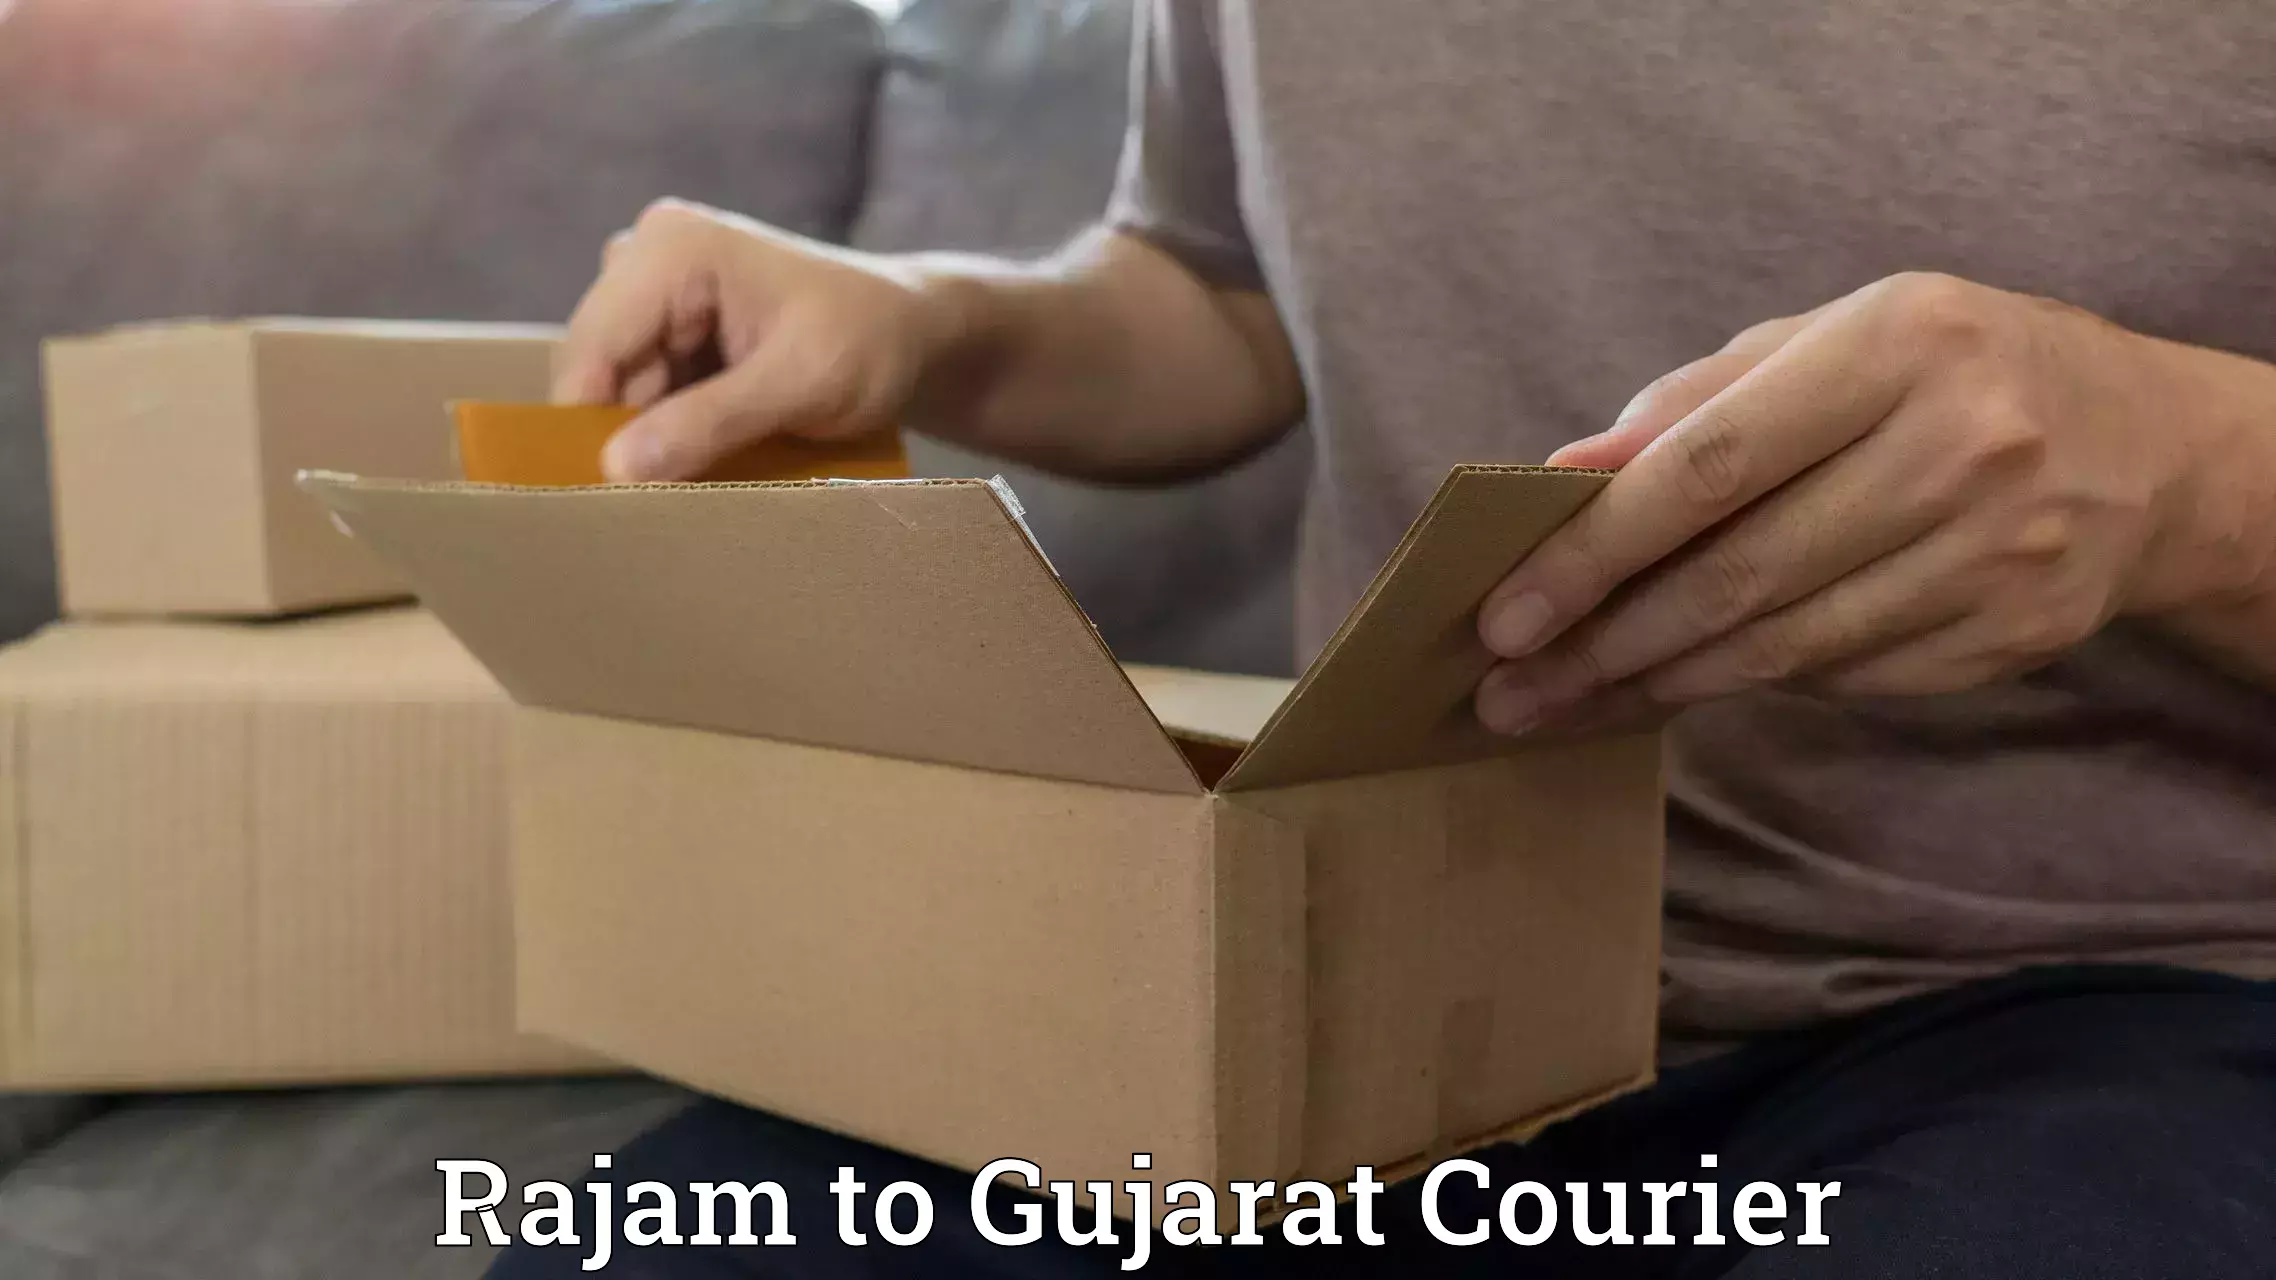 Door-to-door freight service Rajam to Gujarat